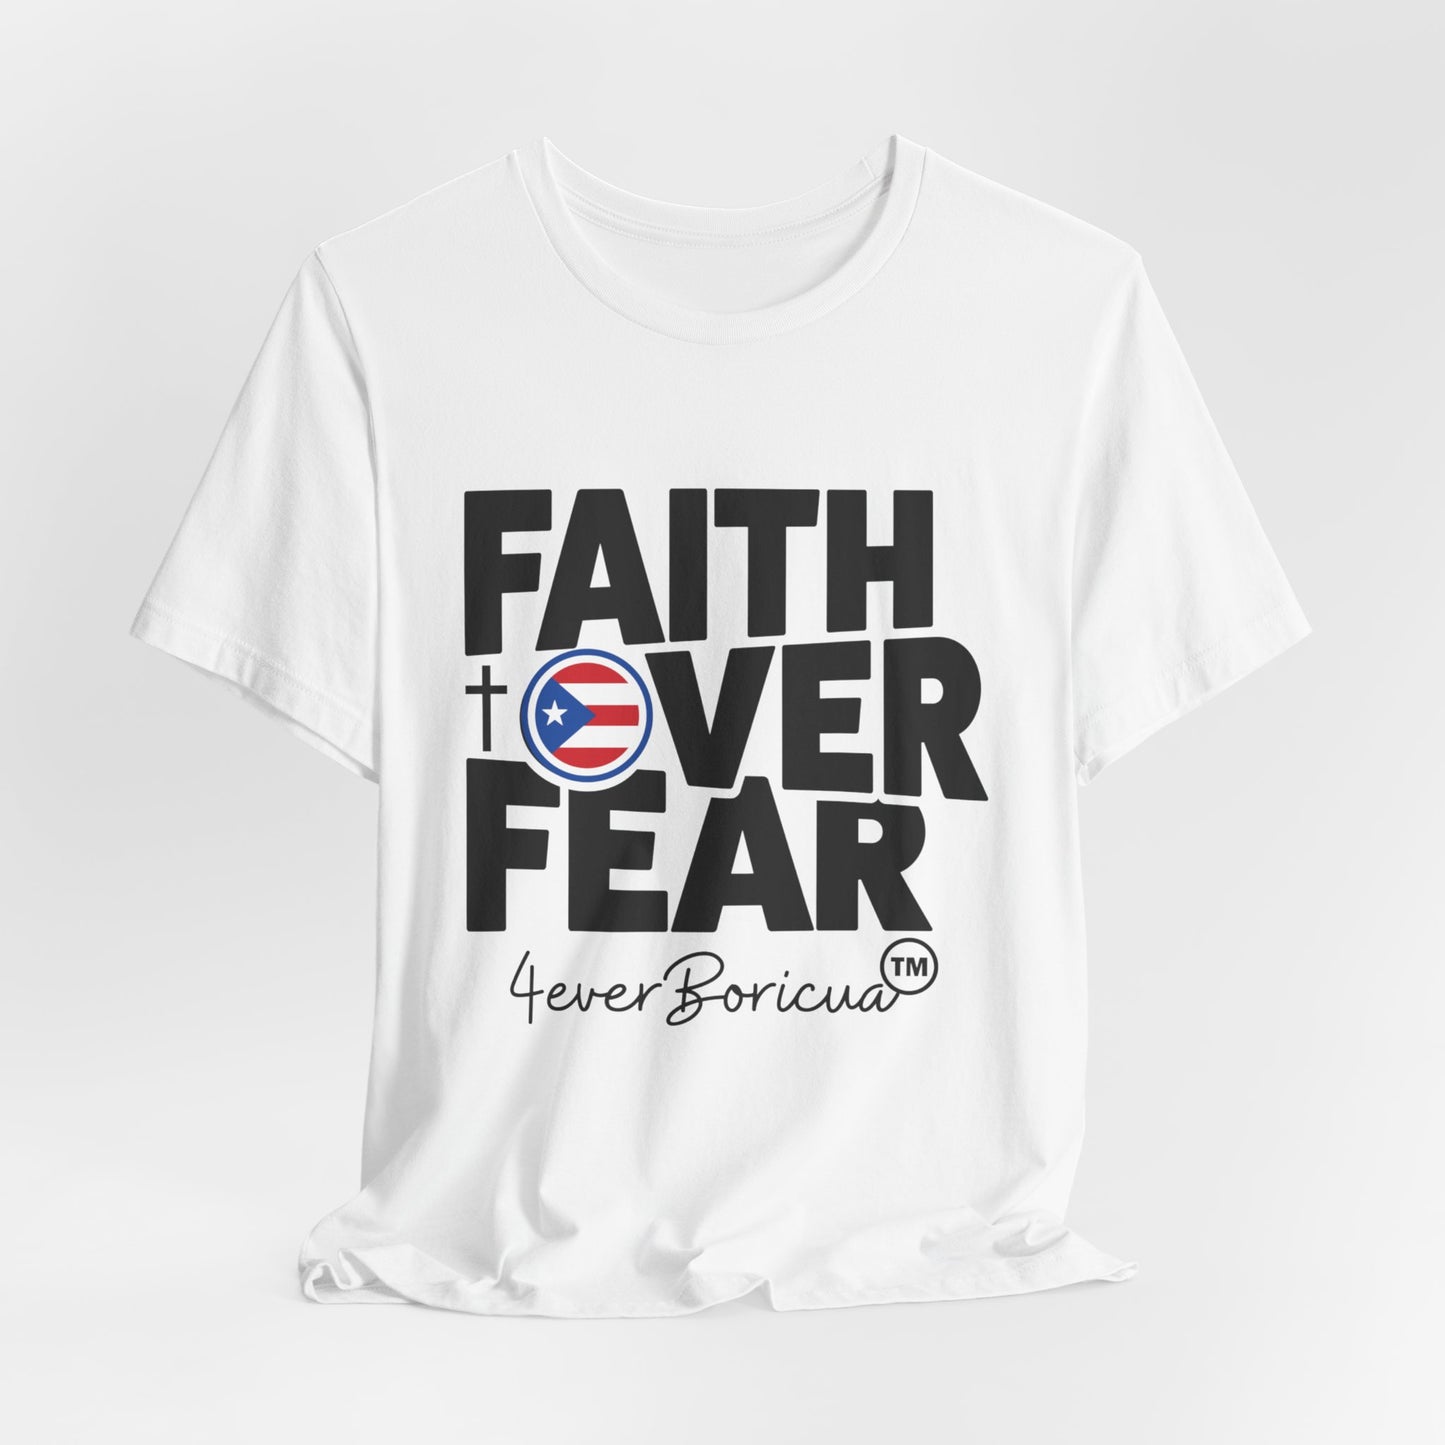 FAITH OVER FEAR Unisex Puerto Rico Boricua Shirt 4everBoricua™️